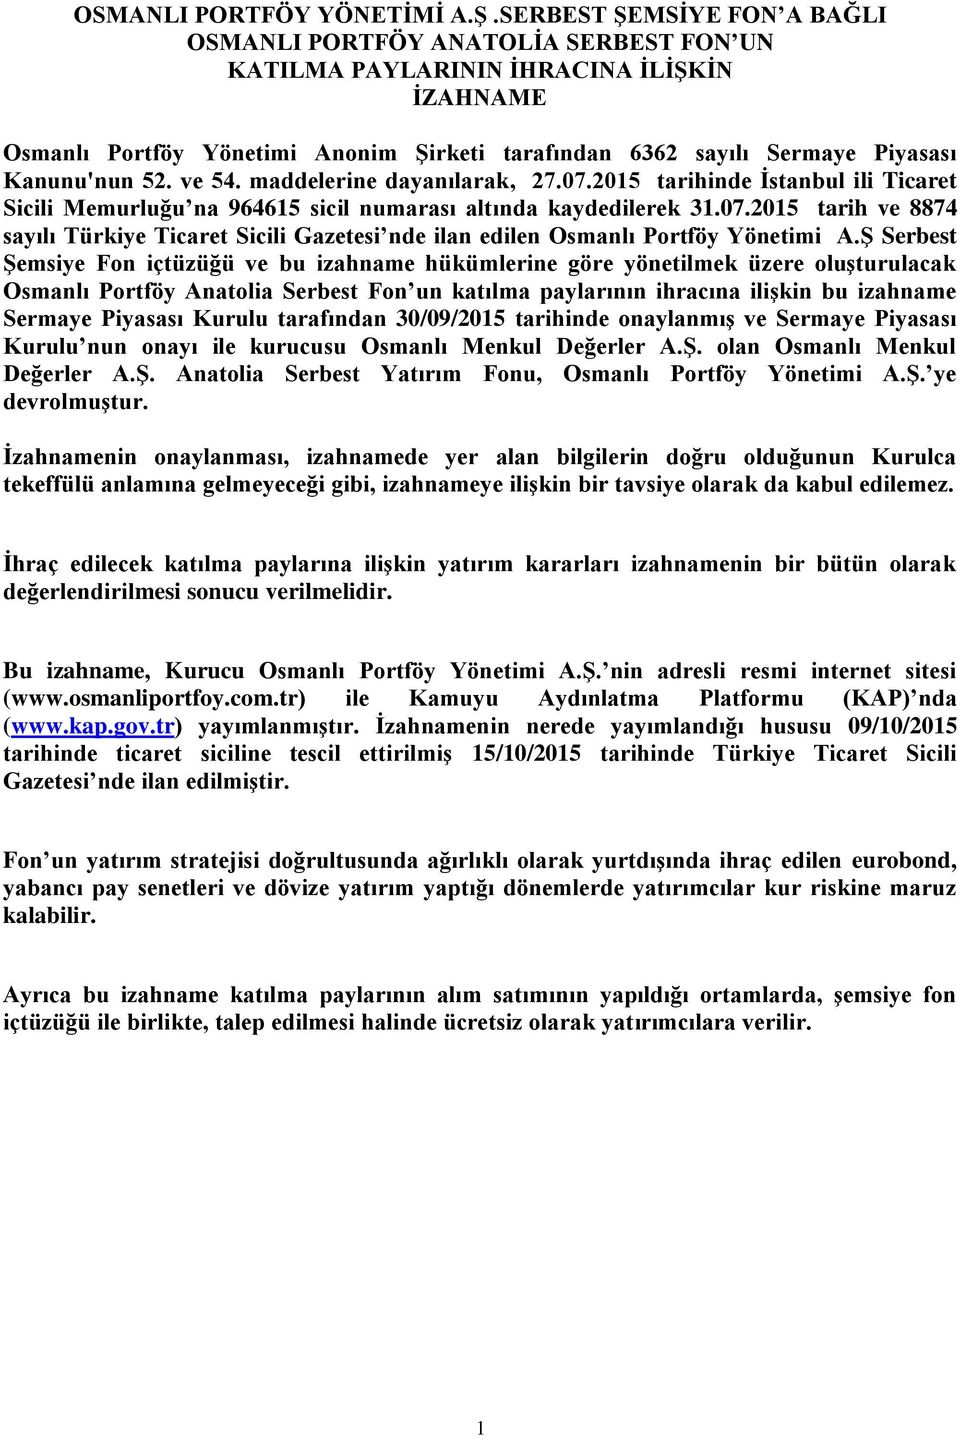 Kanunu'nun 52. ve 54. maddelerine dayanılarak, 27.07.2015 tarihinde İstanbul ili Ticaret Sicili Memurluğu na 964615 sicil numarası altında kaydedilerek 31.07.2015 tarih ve 8874 sayılı Türkiye Ticaret Sicili Gazetesi nde ilan edilen Osmanlı Portföy Yönetimi A.